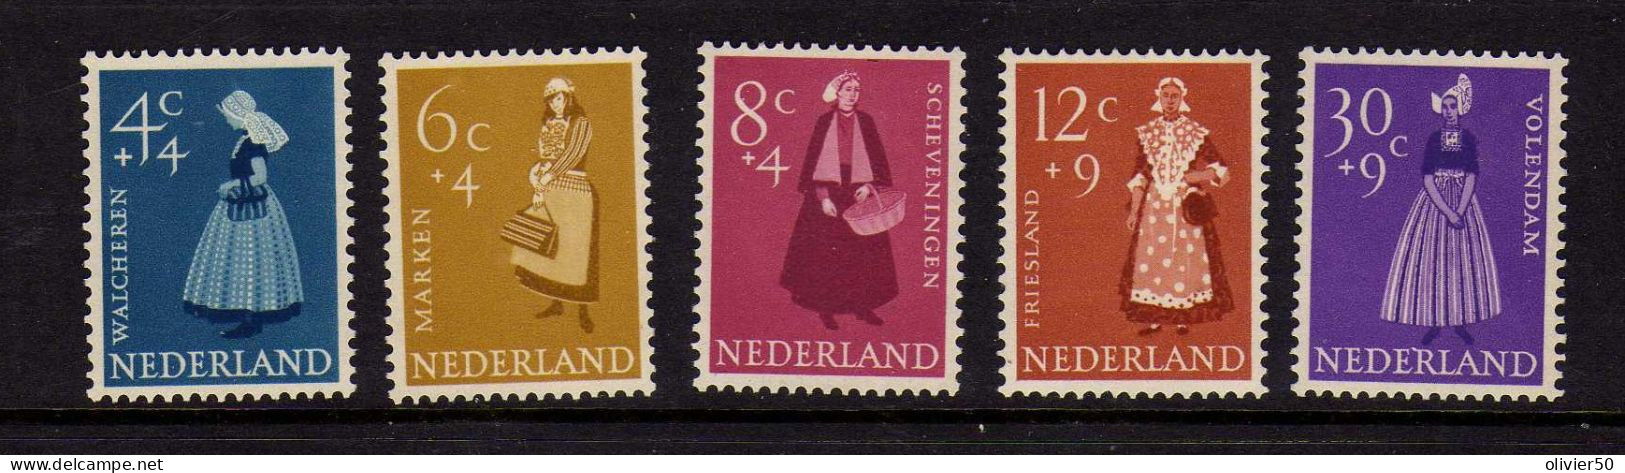 Pays-Bas - 1958 - Costumes - Oeuvres De Bienfaisance - Neufs** - MNH - Nuovi